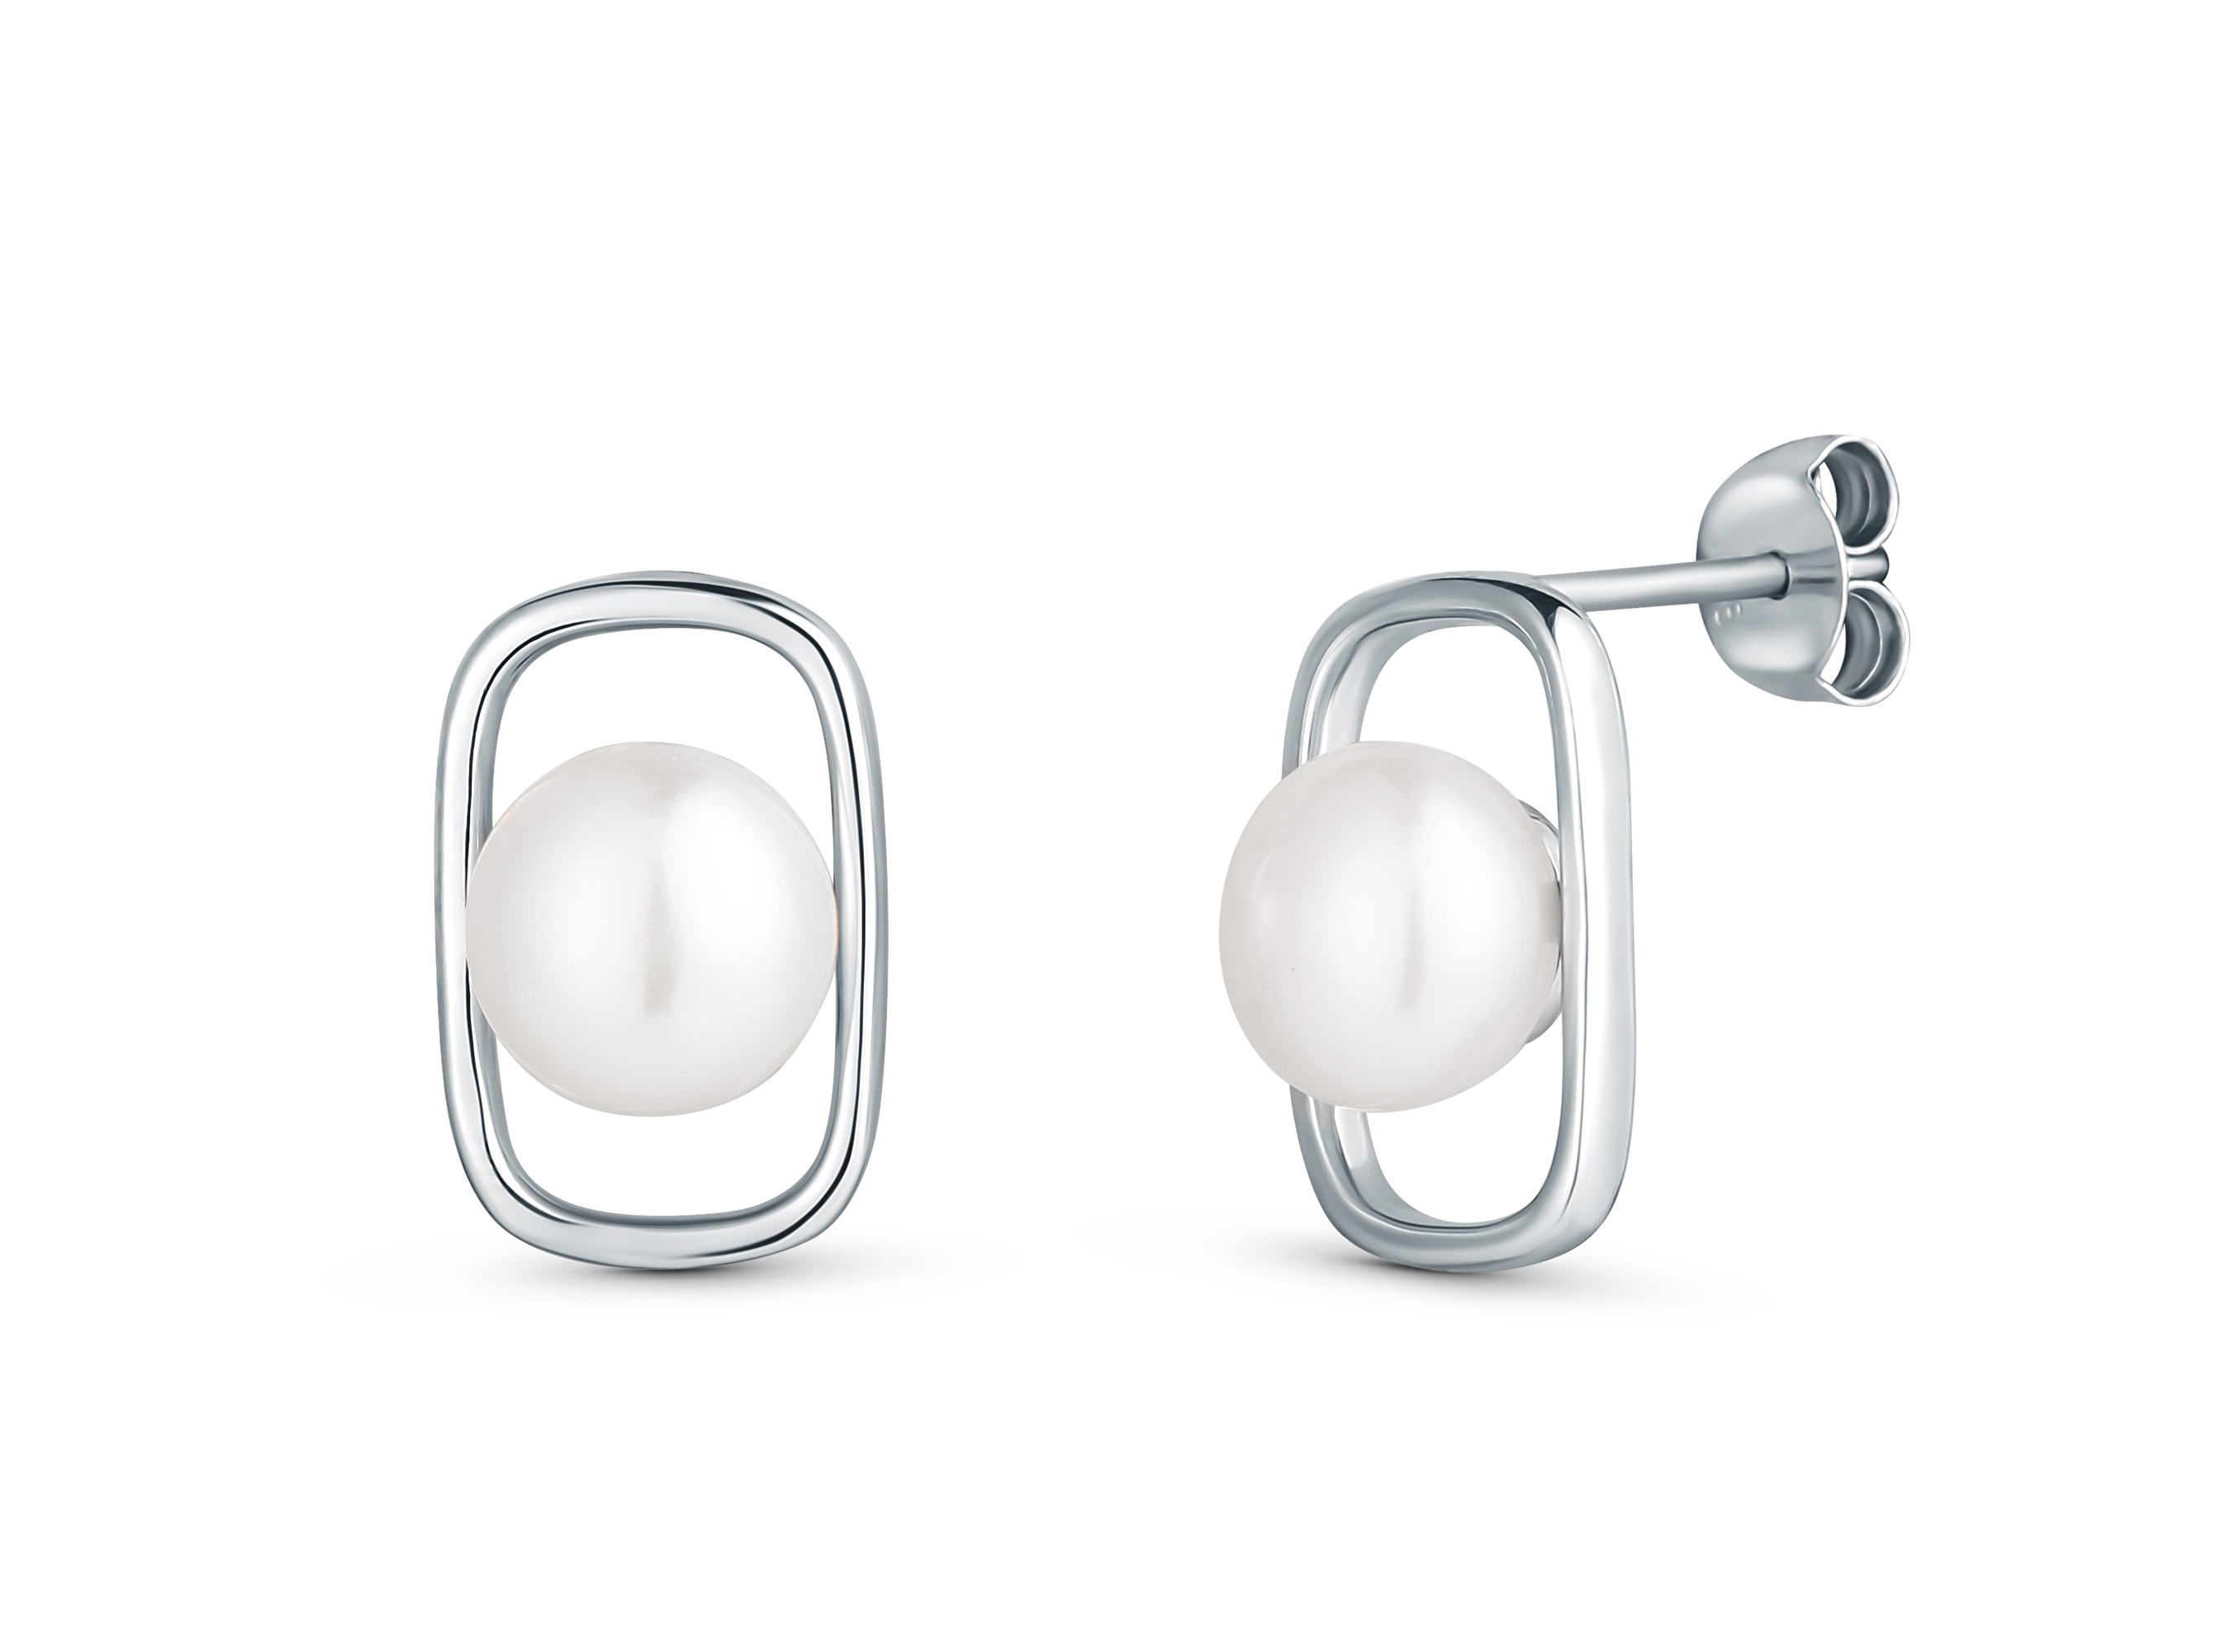 JwL Luxury Pearls Jemné stříbrné náušnice s pravou perlou JL0829